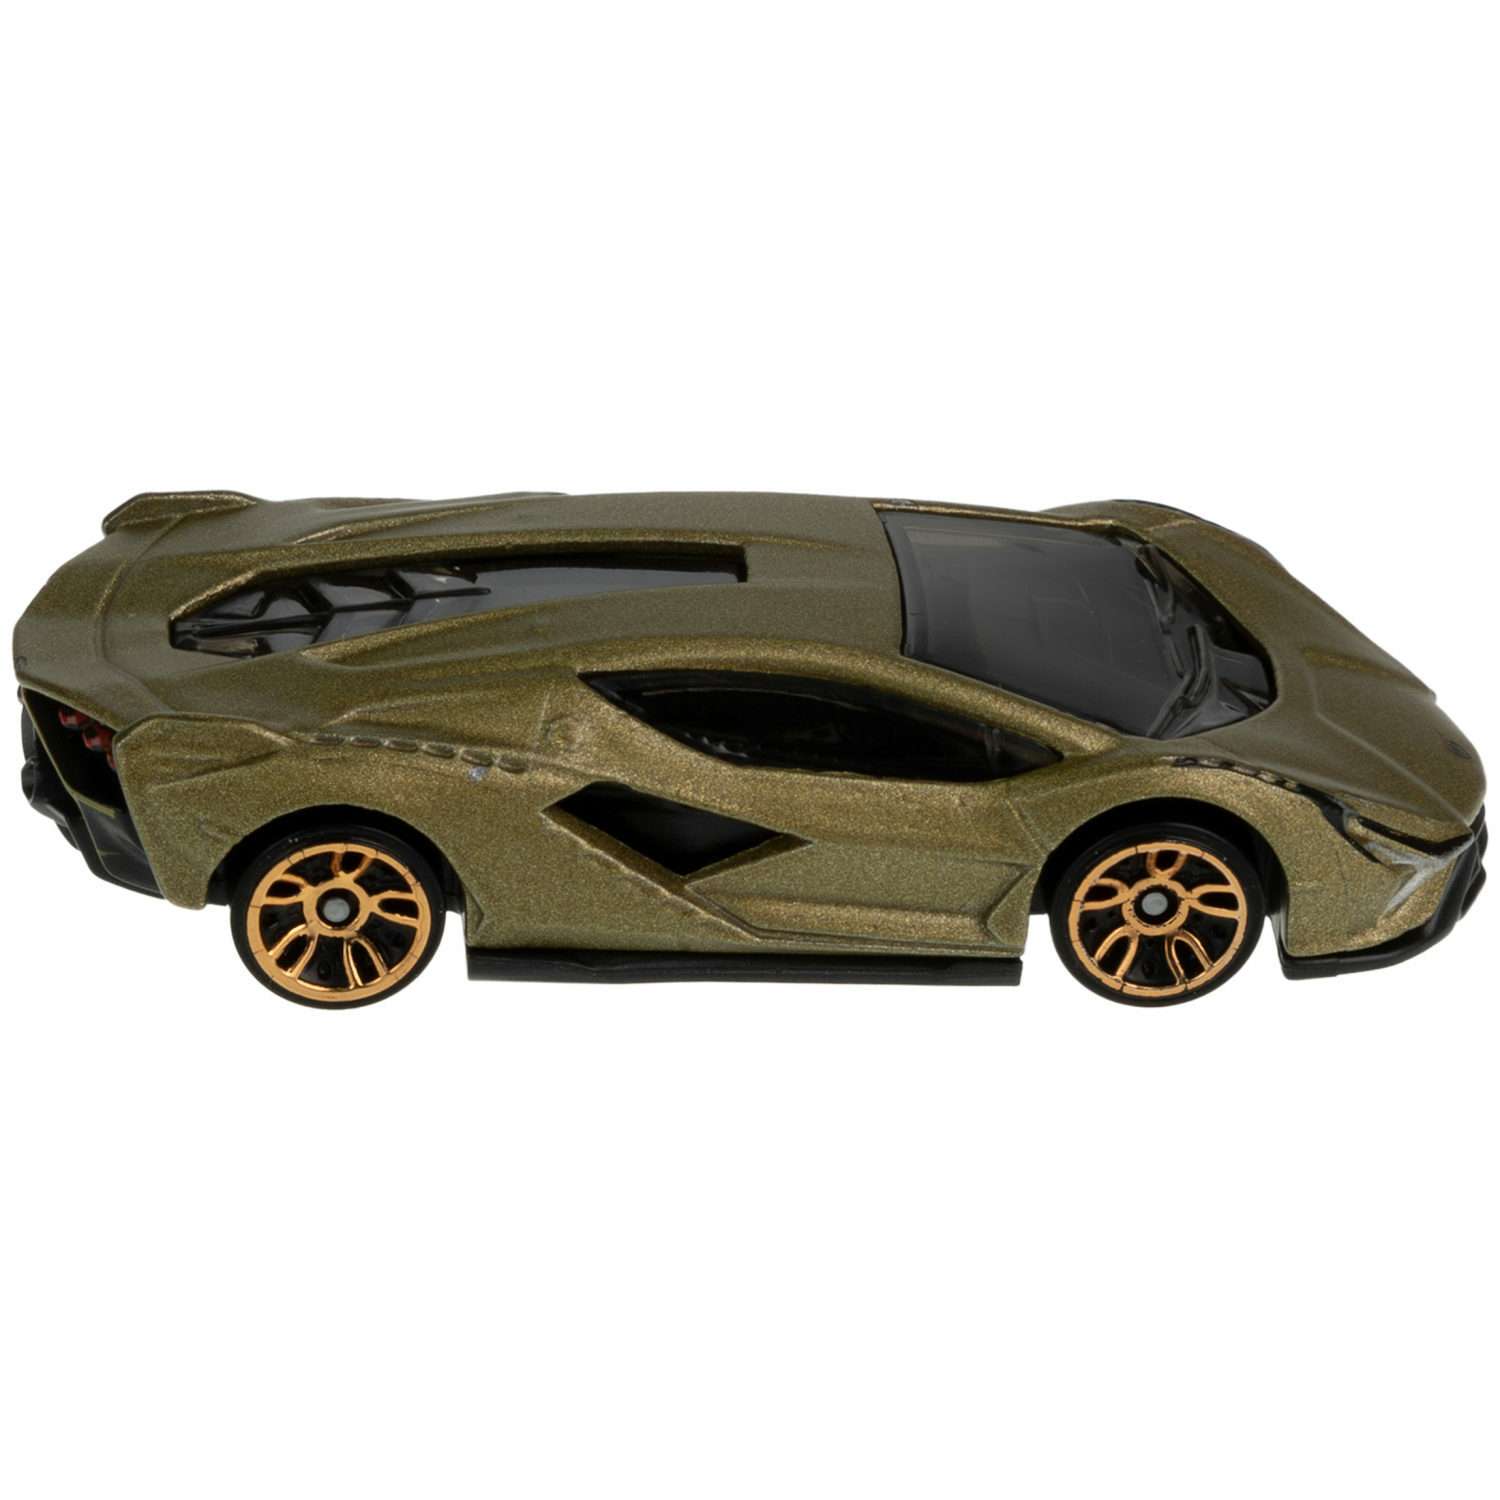 Коллекционная машинка Hot Wheels Lamborghini sian fkp 37 5785-146 - фото 3